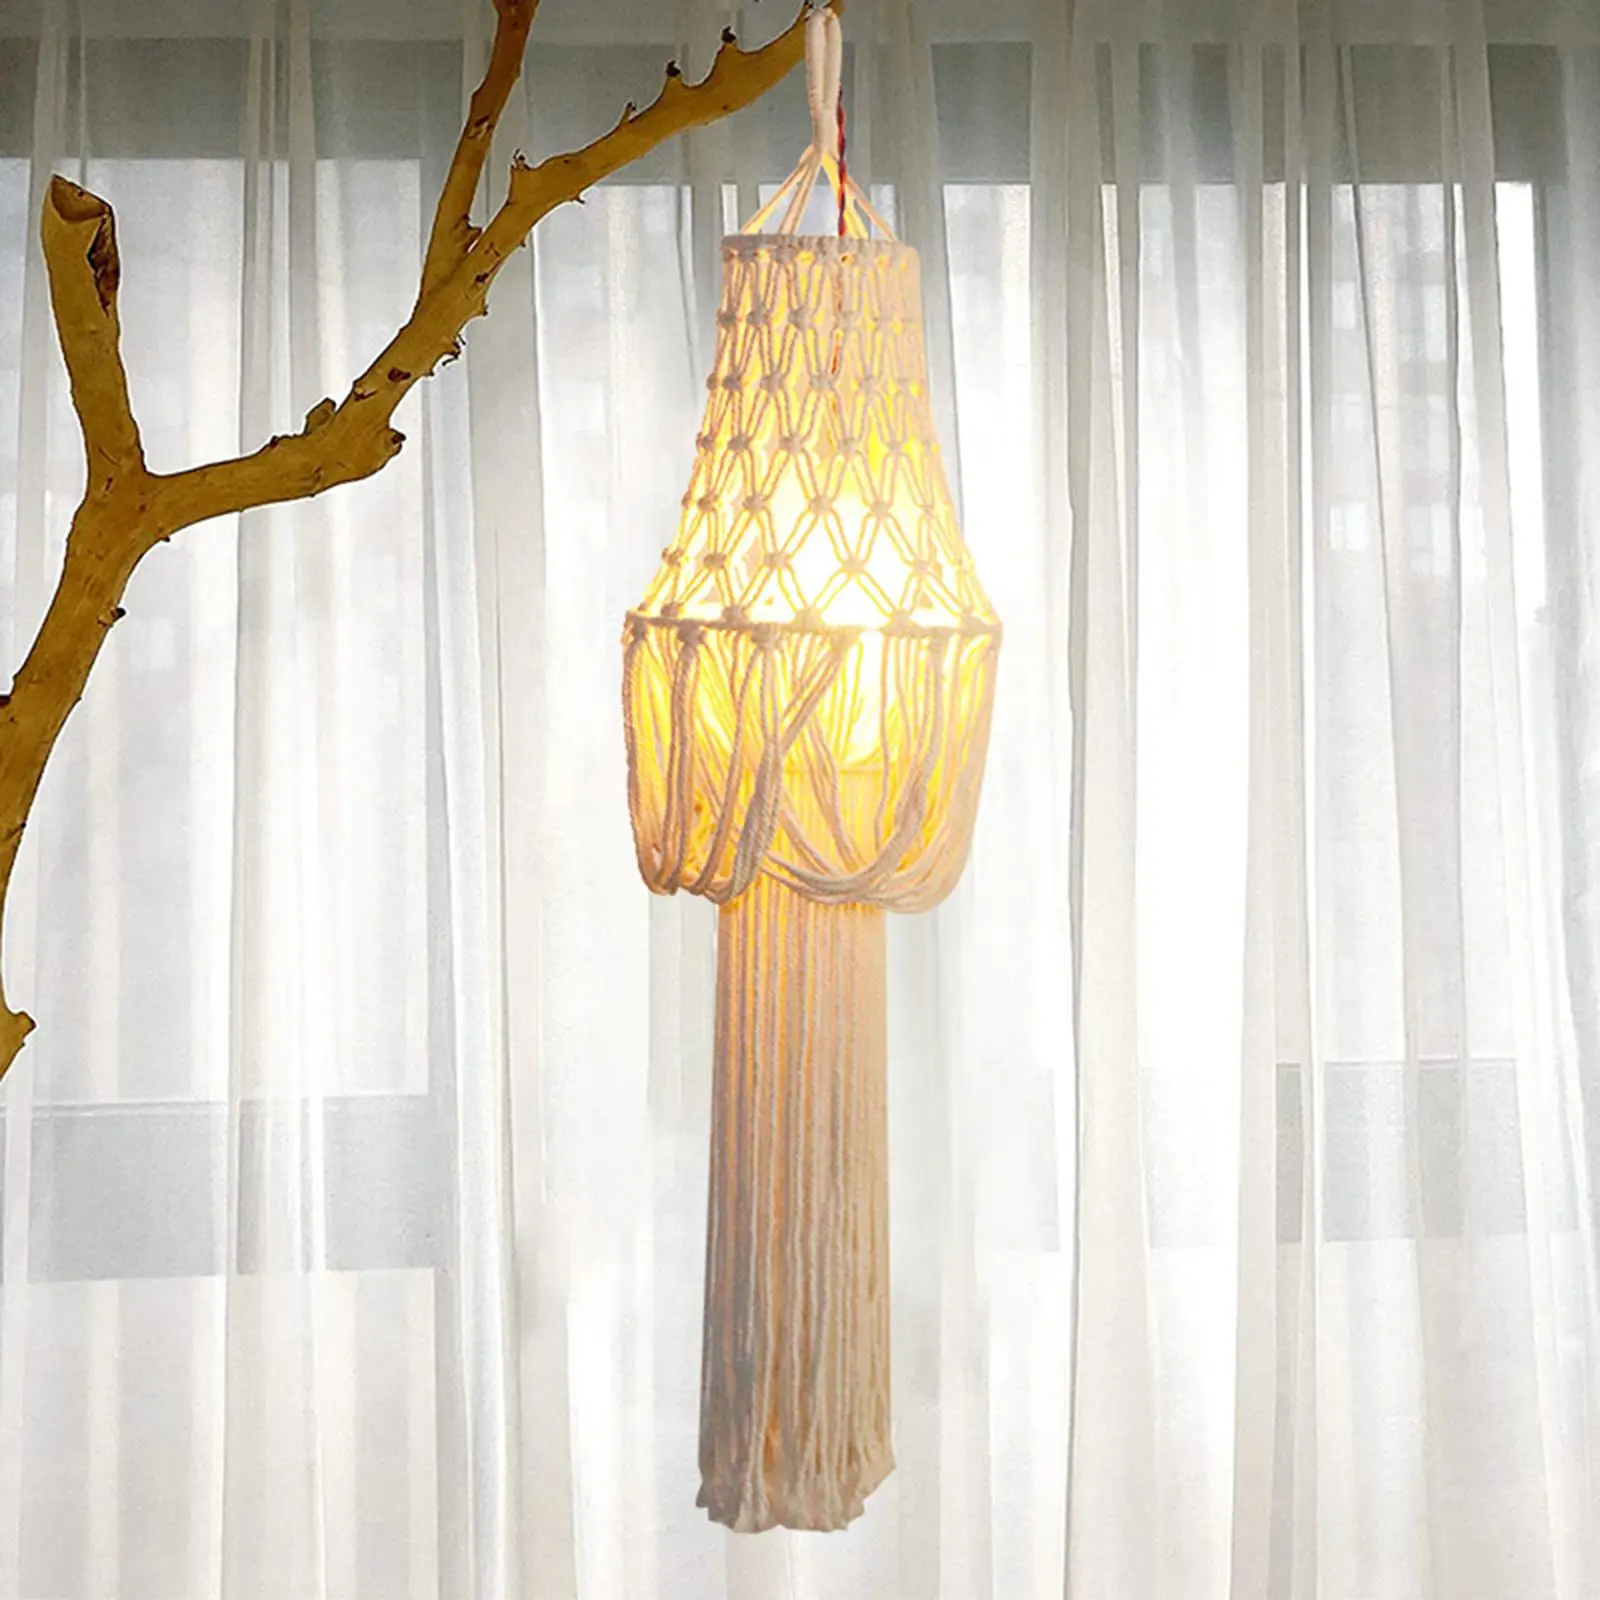 Handmade Macrame Lamp Shade Pendant Light Cover Modern for Living Room Decor